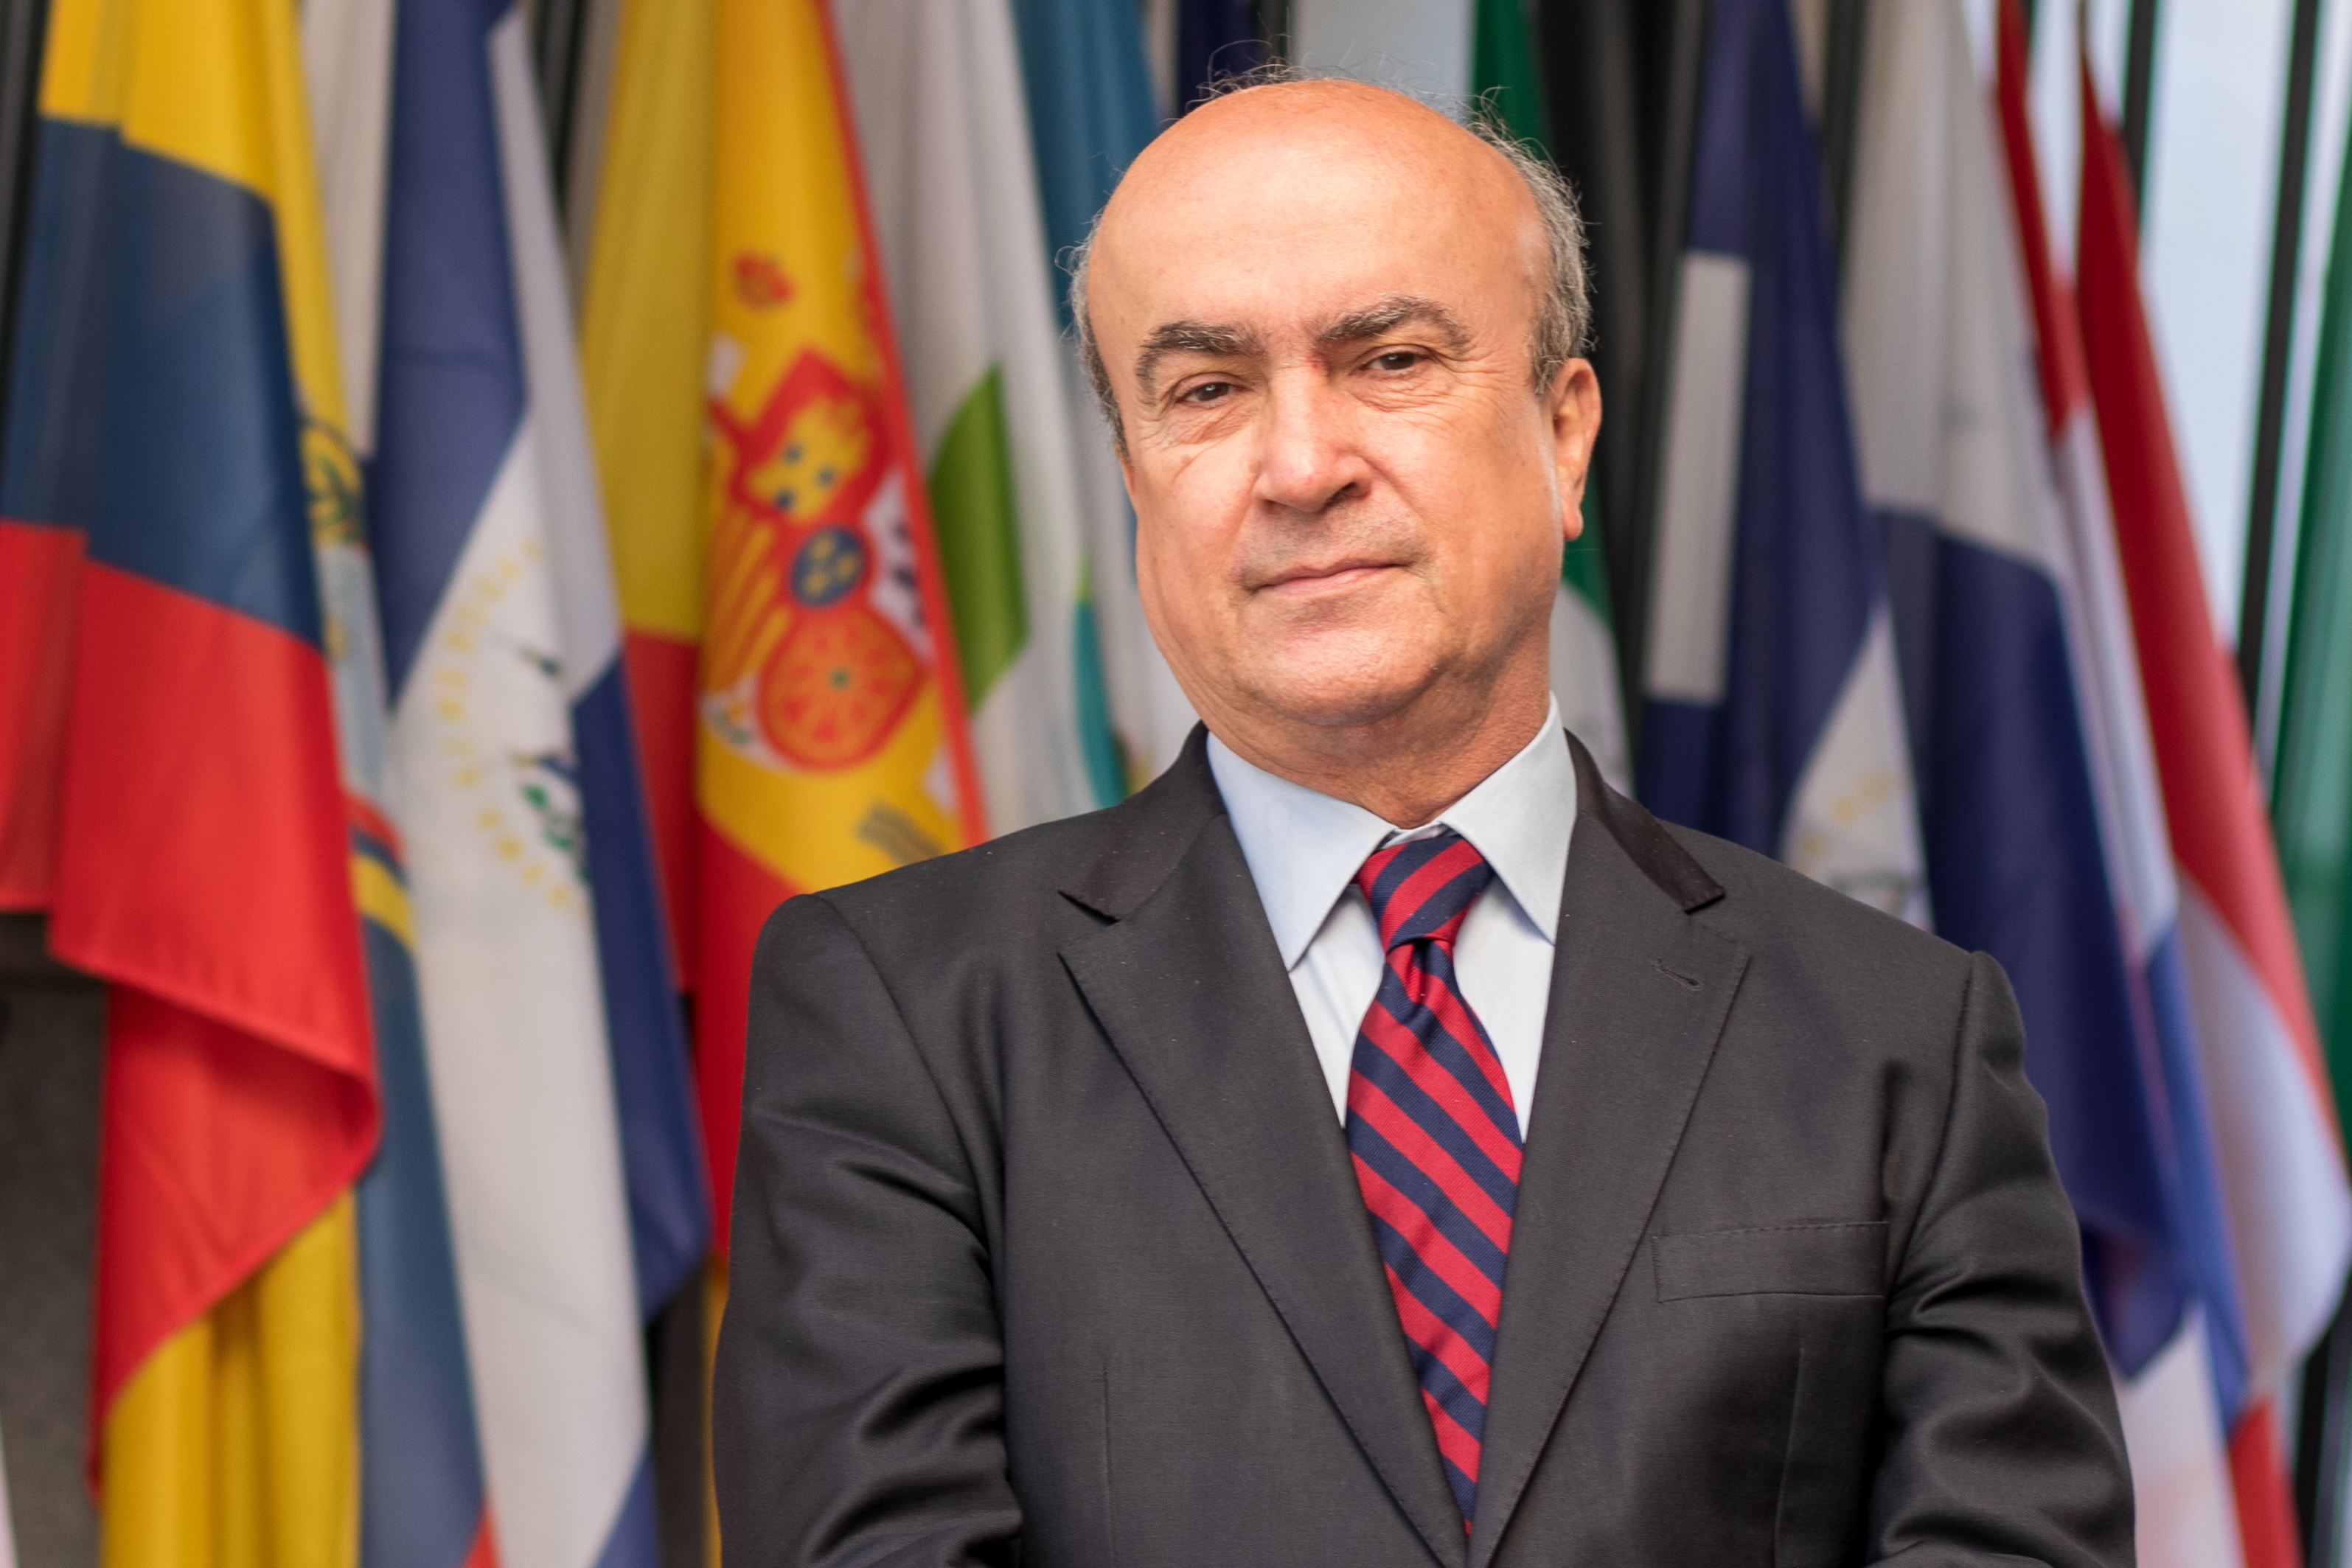 El Secretario General de la OEI, Mariano Jabonero, es distinguido como Doctor Honoris Causa por la Universidad Nacional Abierta y a Distancia (UNAD) de Colombia